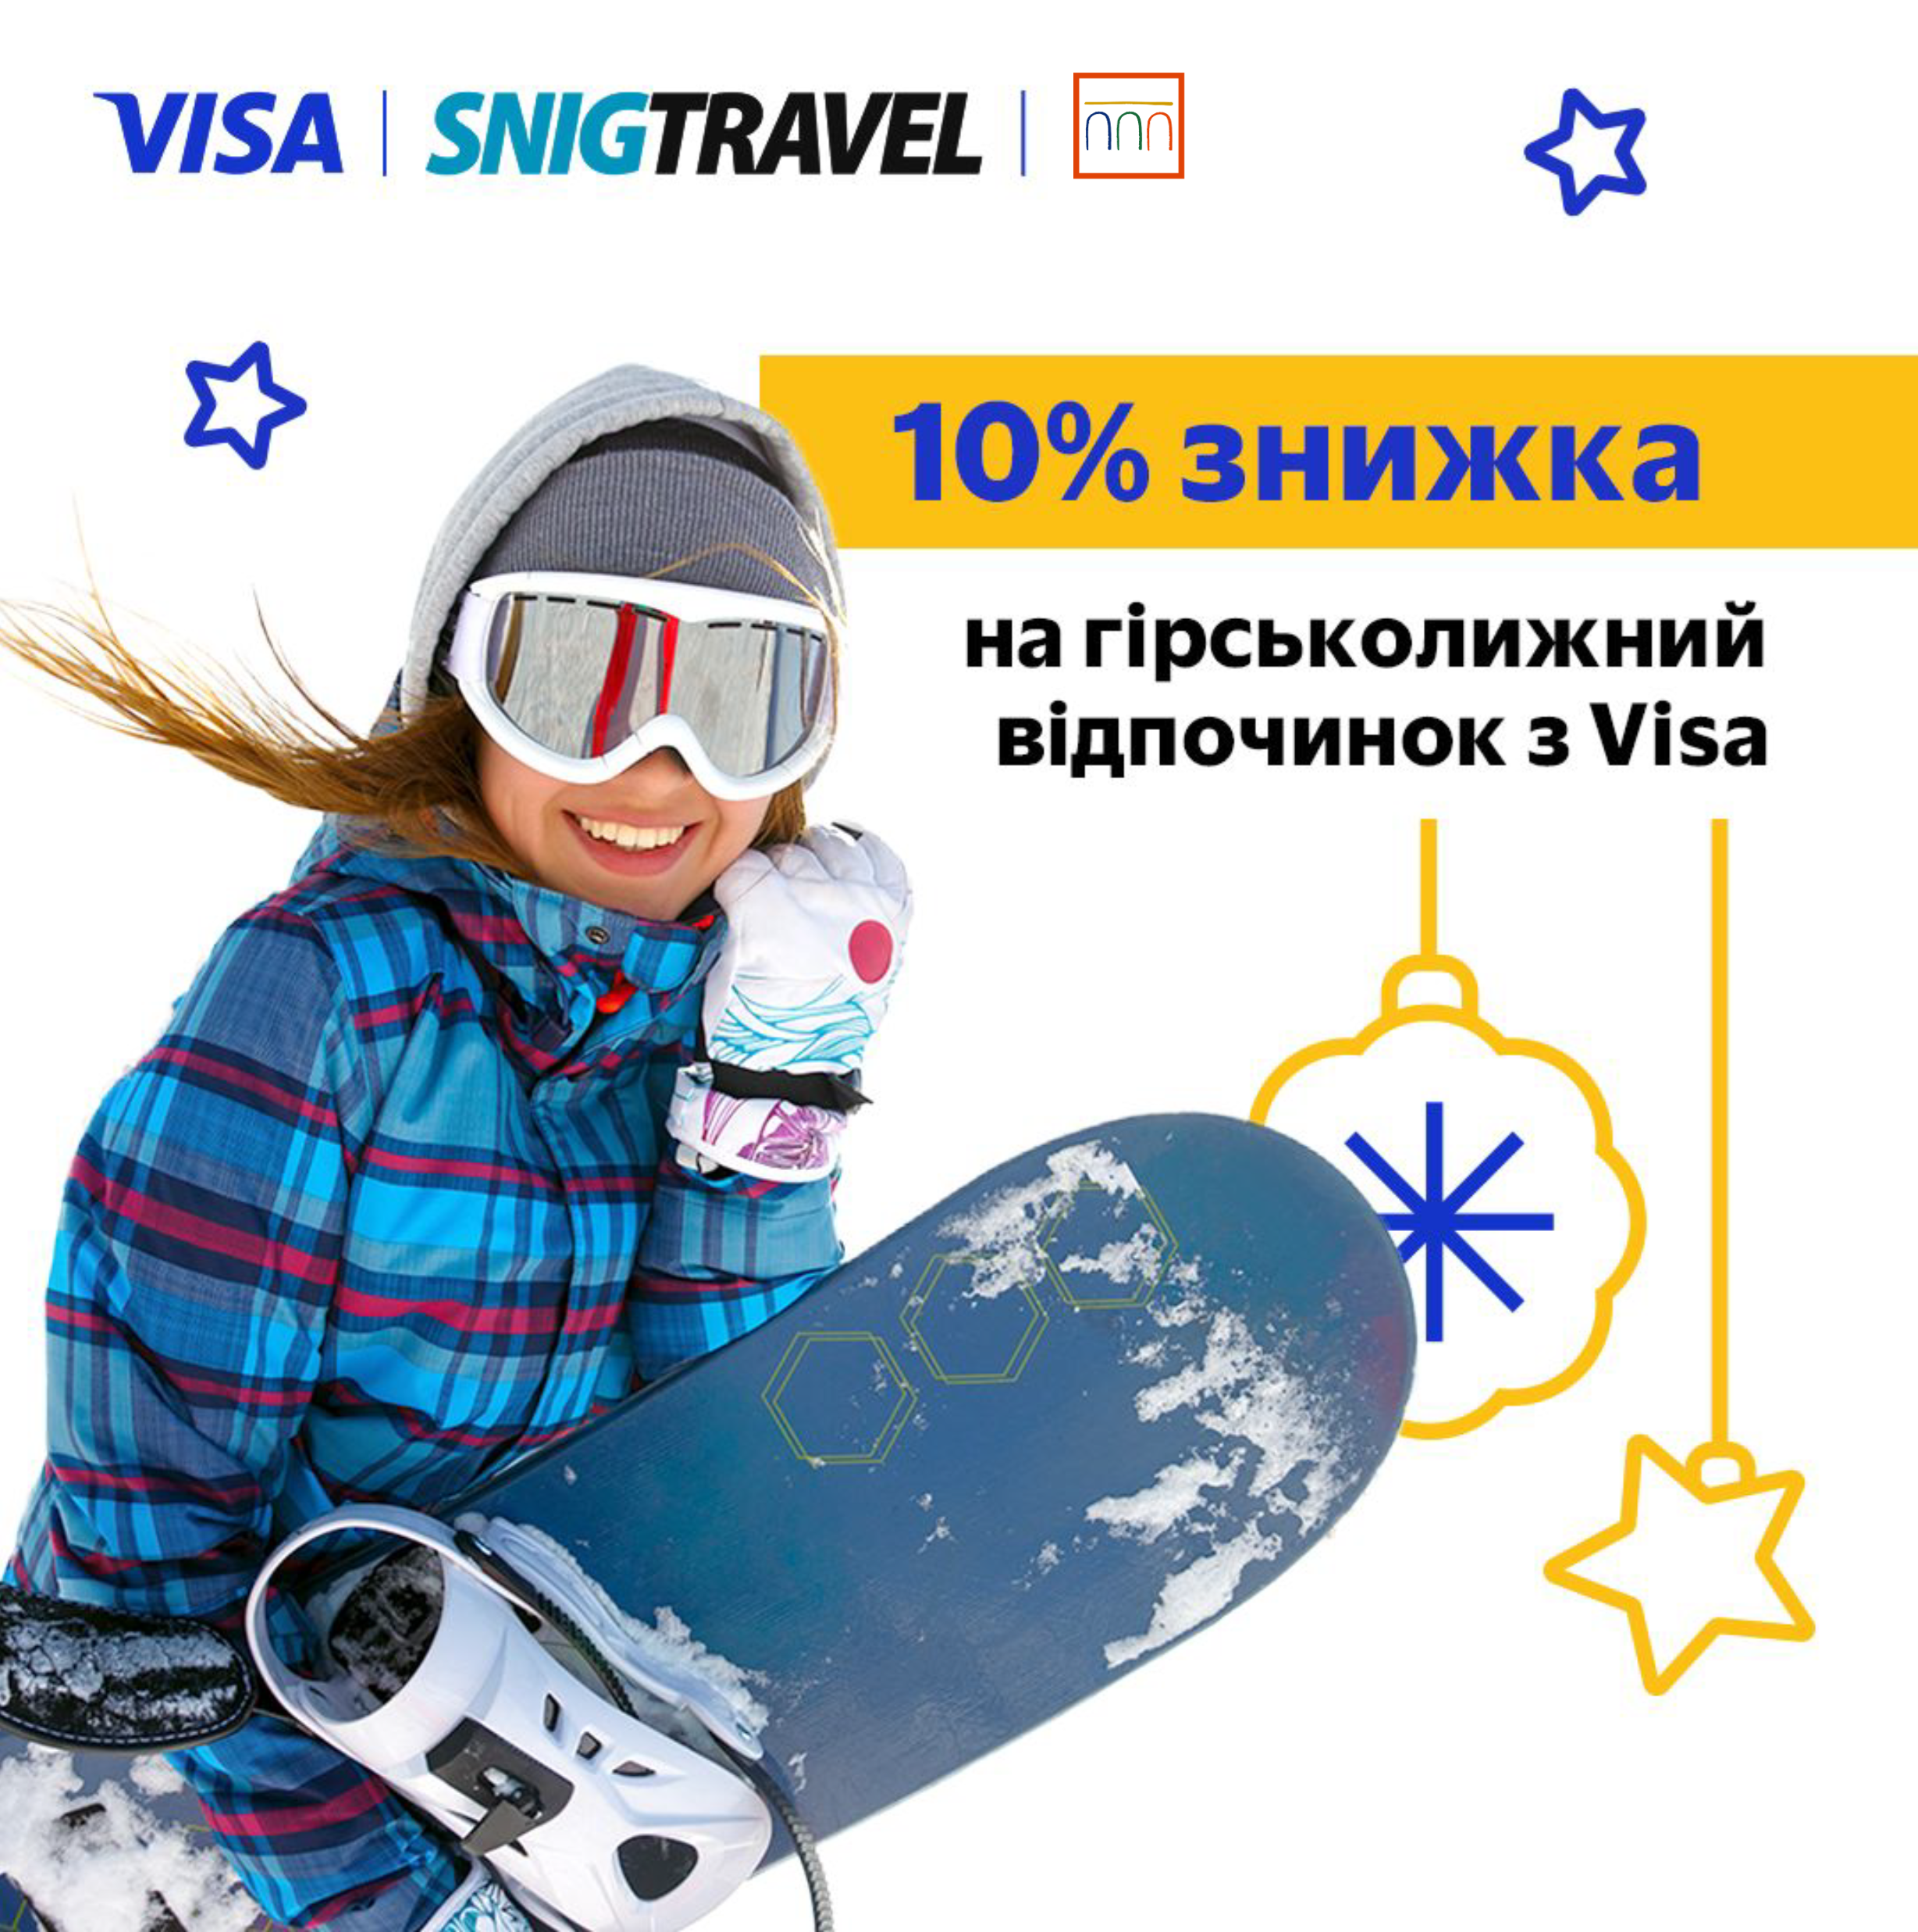 10% знижки на відпочинок зі SNIGTRAVEL та Visa